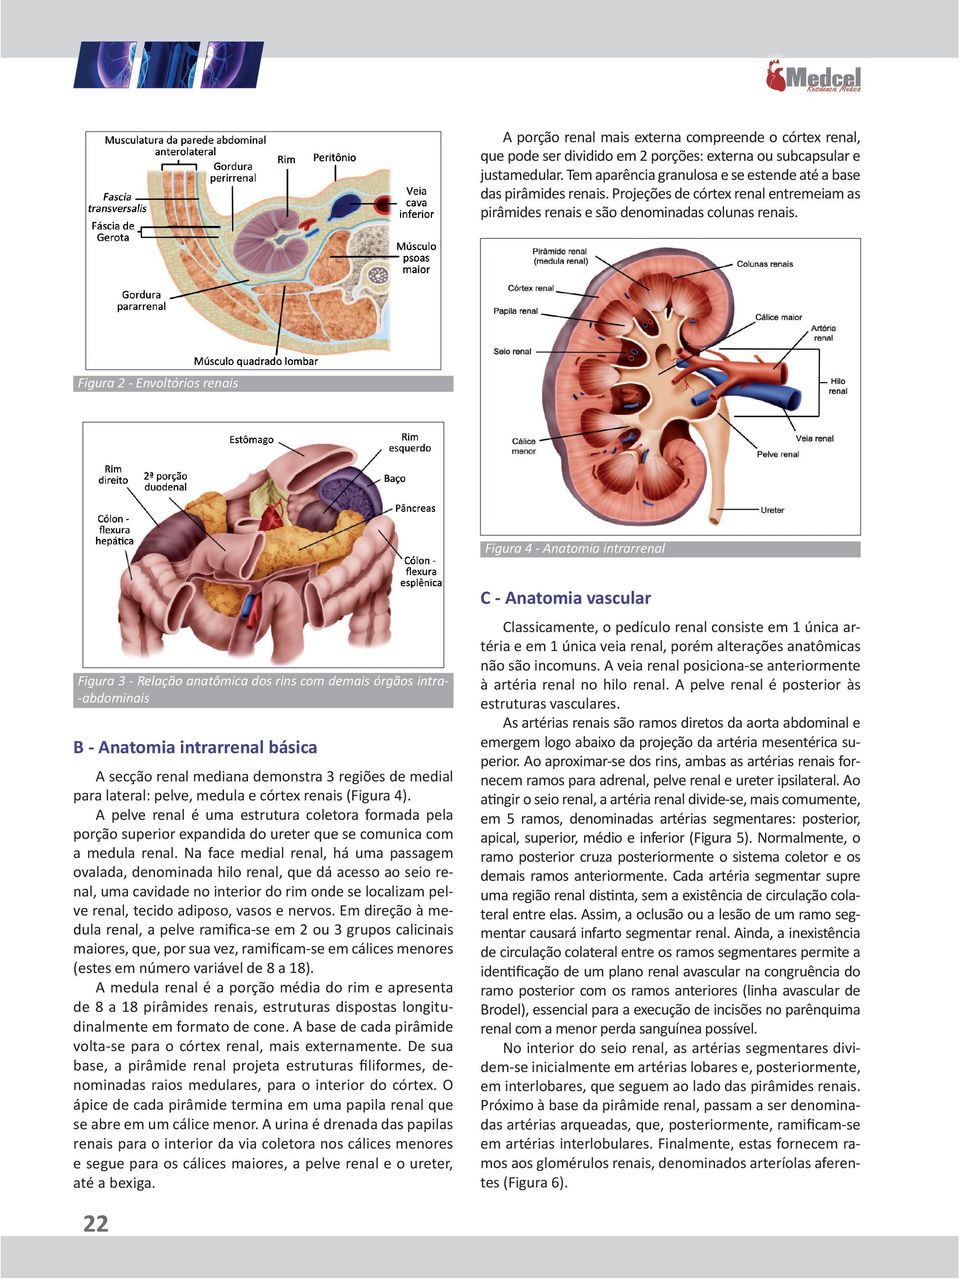 Figura 2 - Envoltórios renais Figura 4 - Anatomia intrarrenal C - Anatomia vascular Figura 3 - Relação anatômica dos rins com demais órgãos intra-abdominais B - Anatomia intrarrenal básica A secção